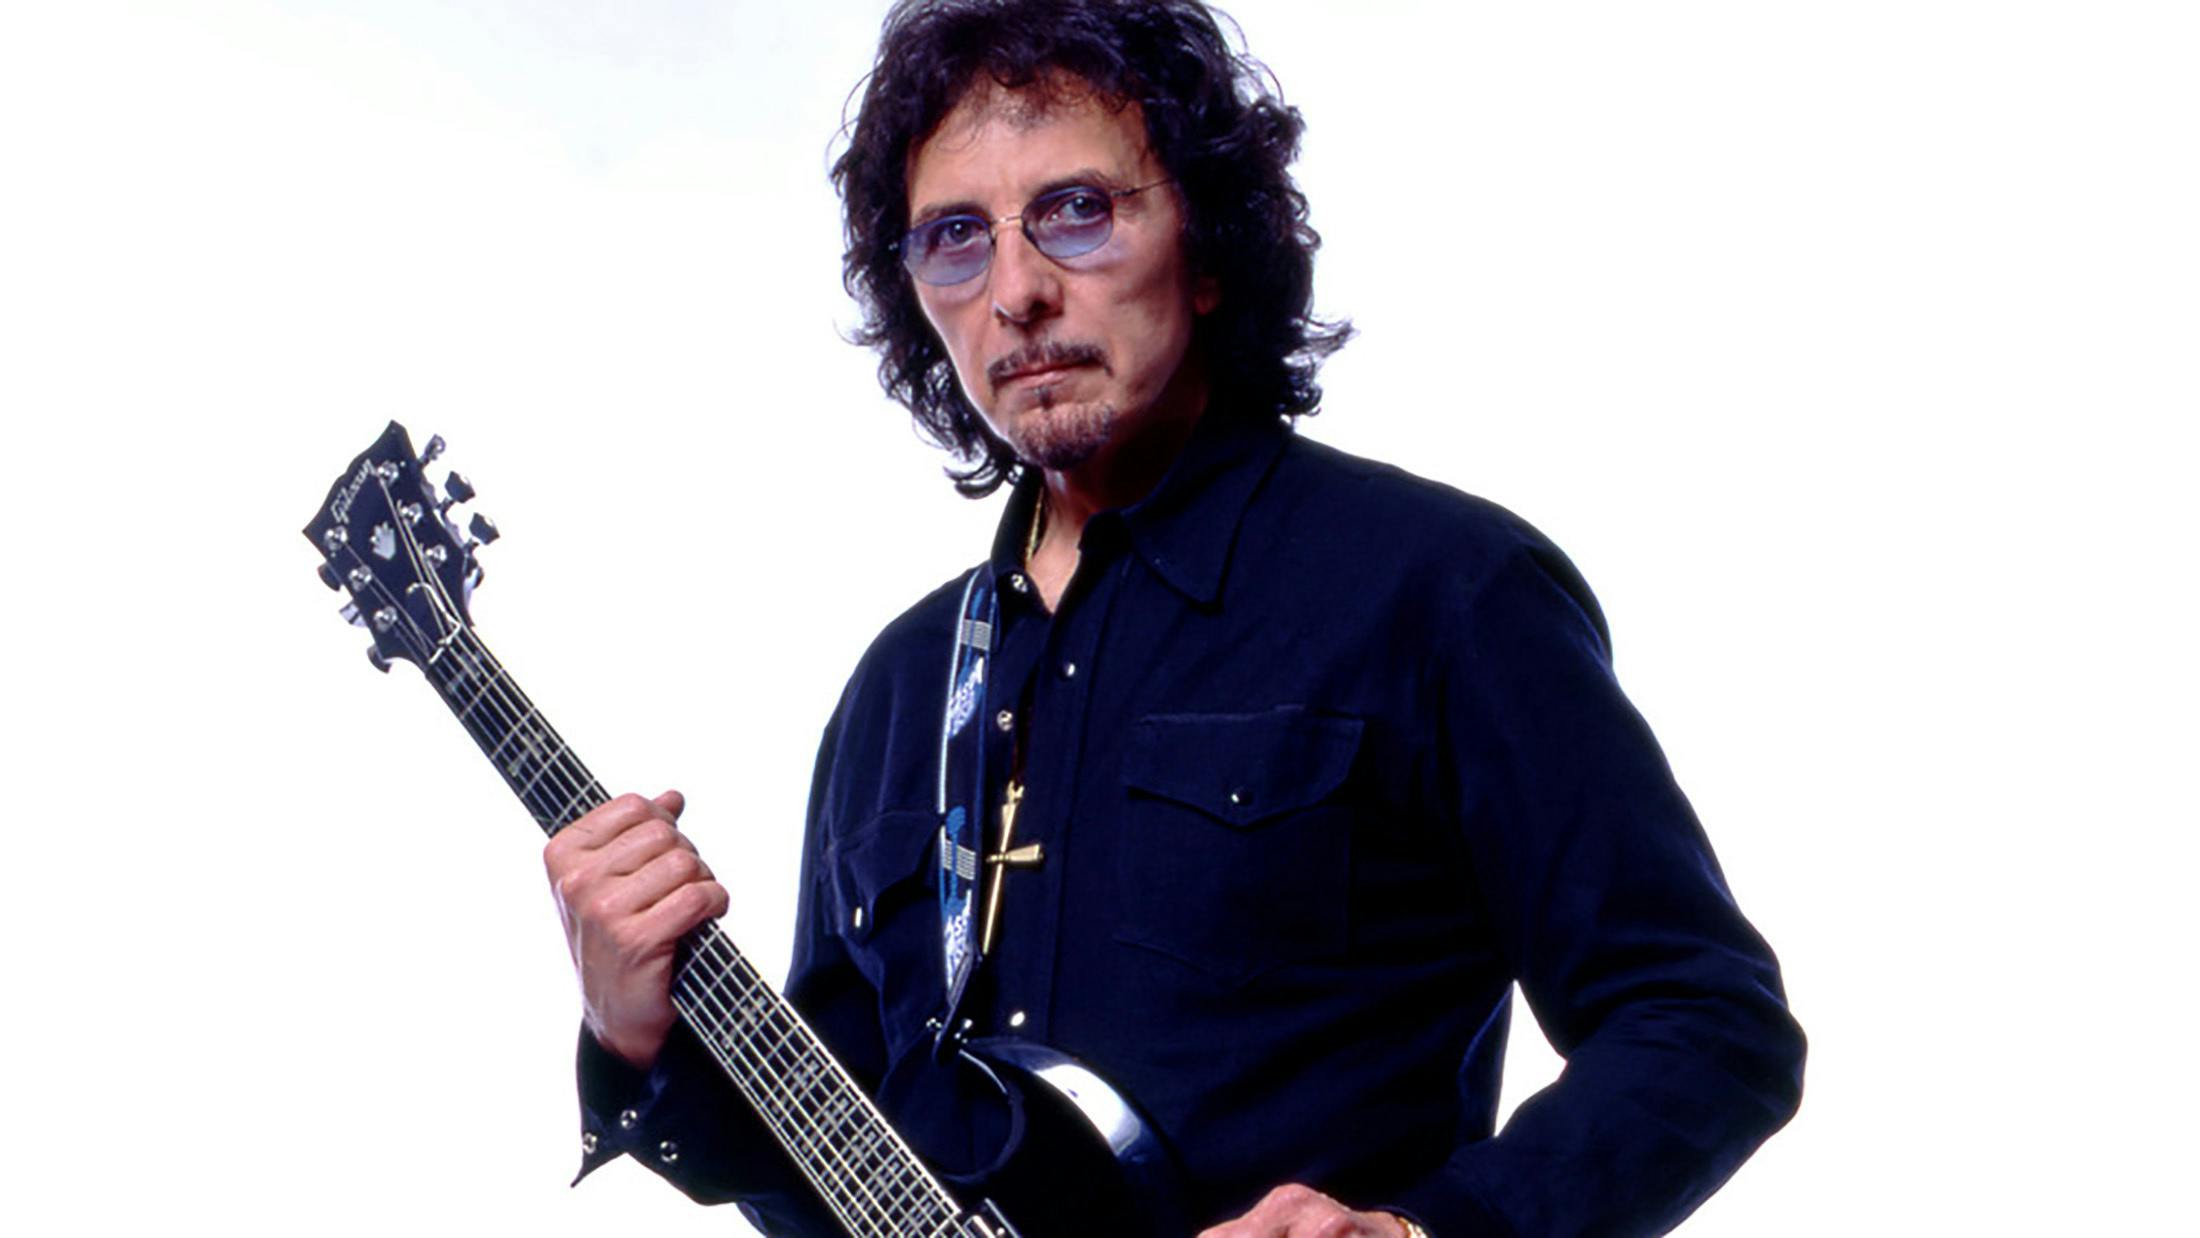 Tony Iommi's Auction Raises £19,000 For Birmingham's Heartlands Hospital